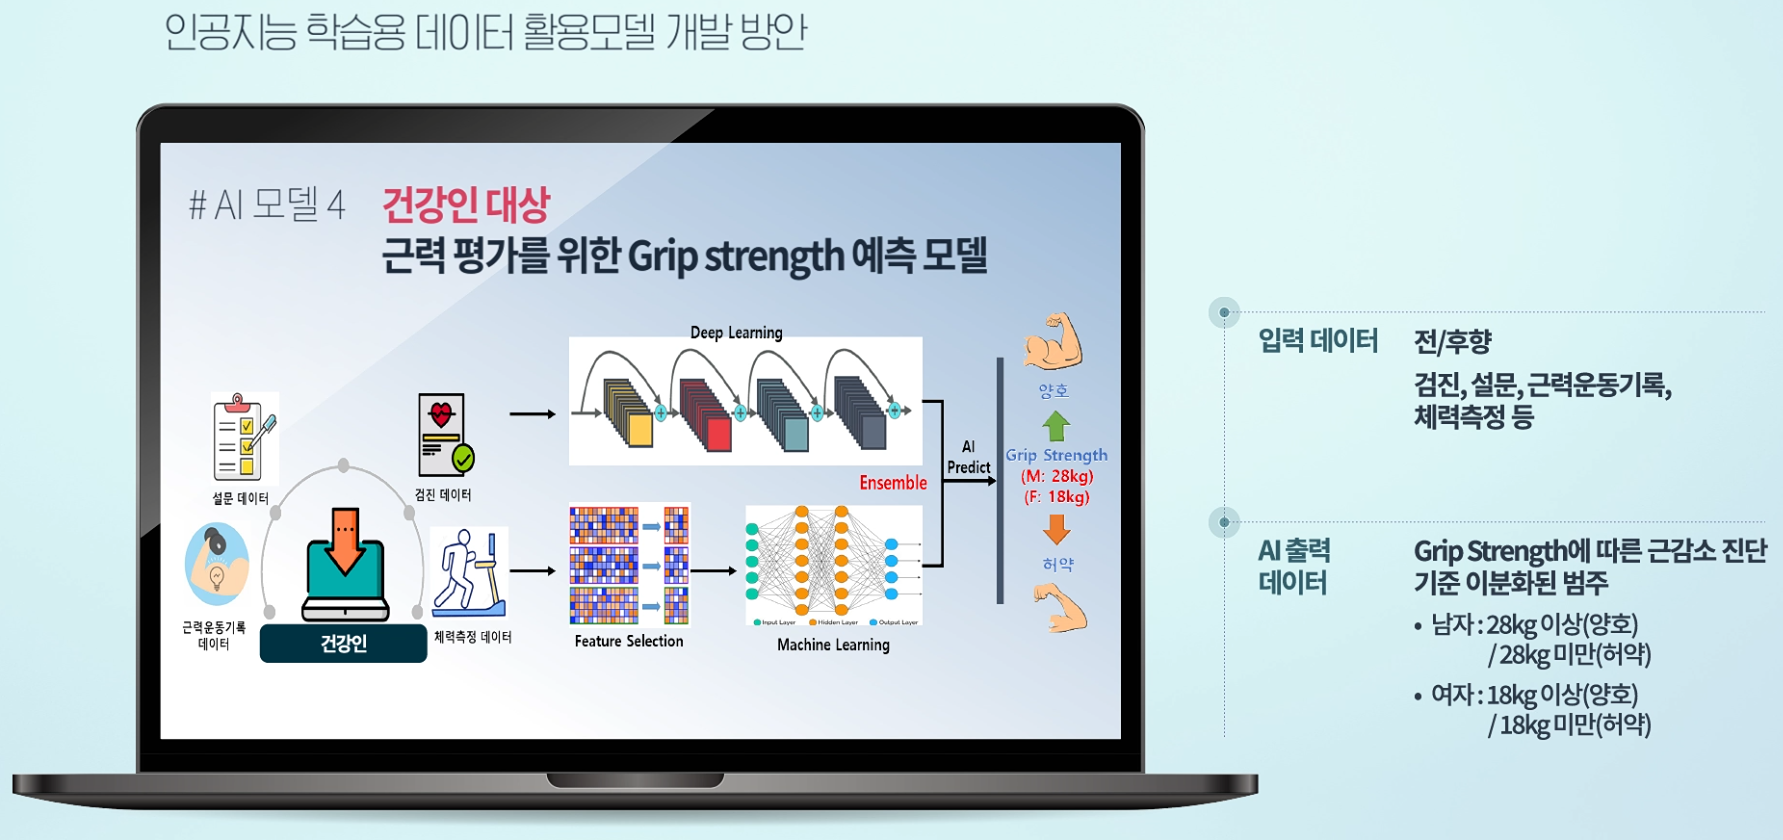 건강인 대상 근력 평가를 위한 Grip strength 예측 모델